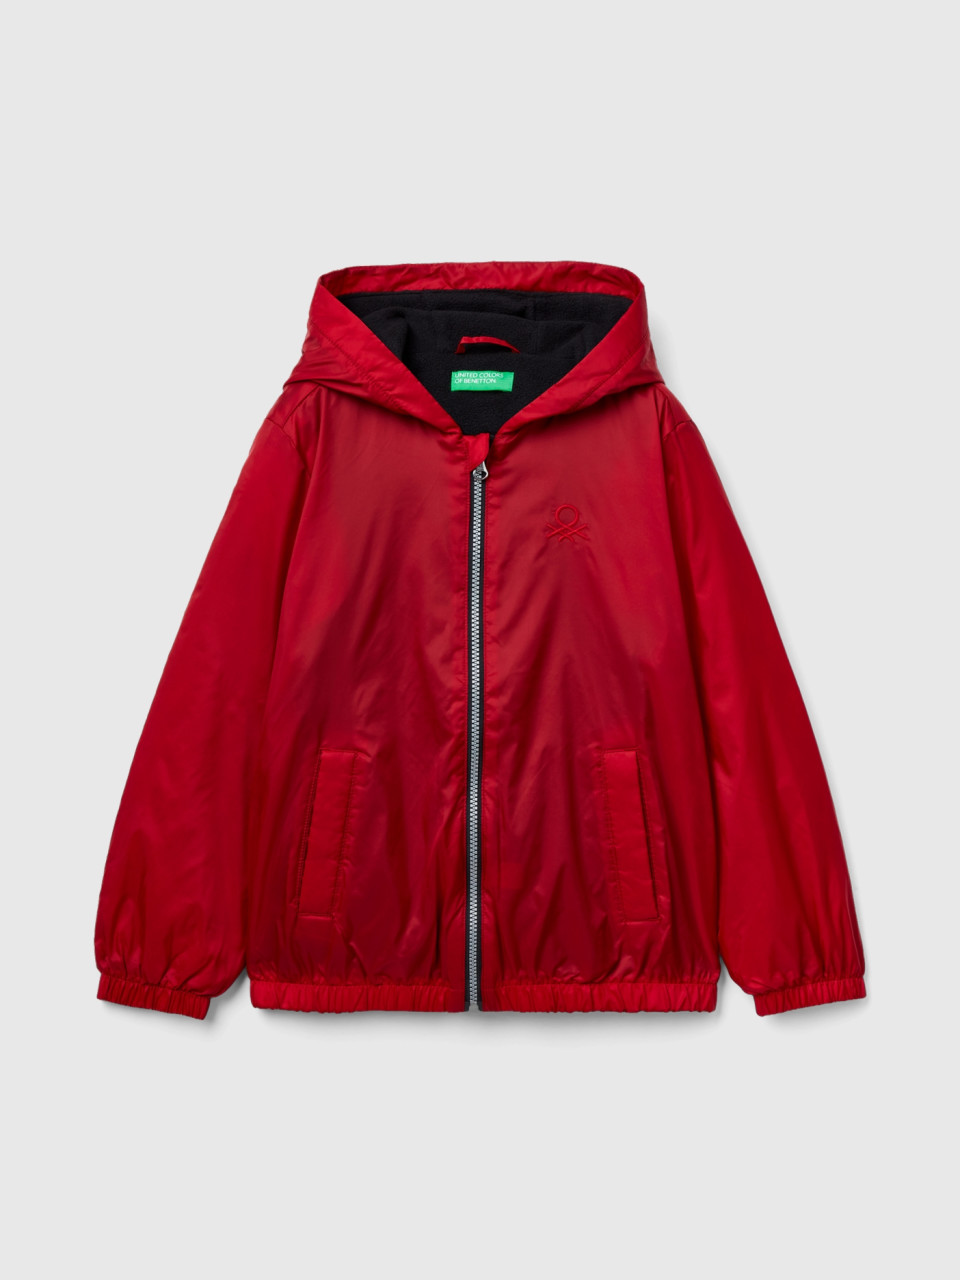 Benetton, Nylon Jacket With Zip And Hood, Red, Kids